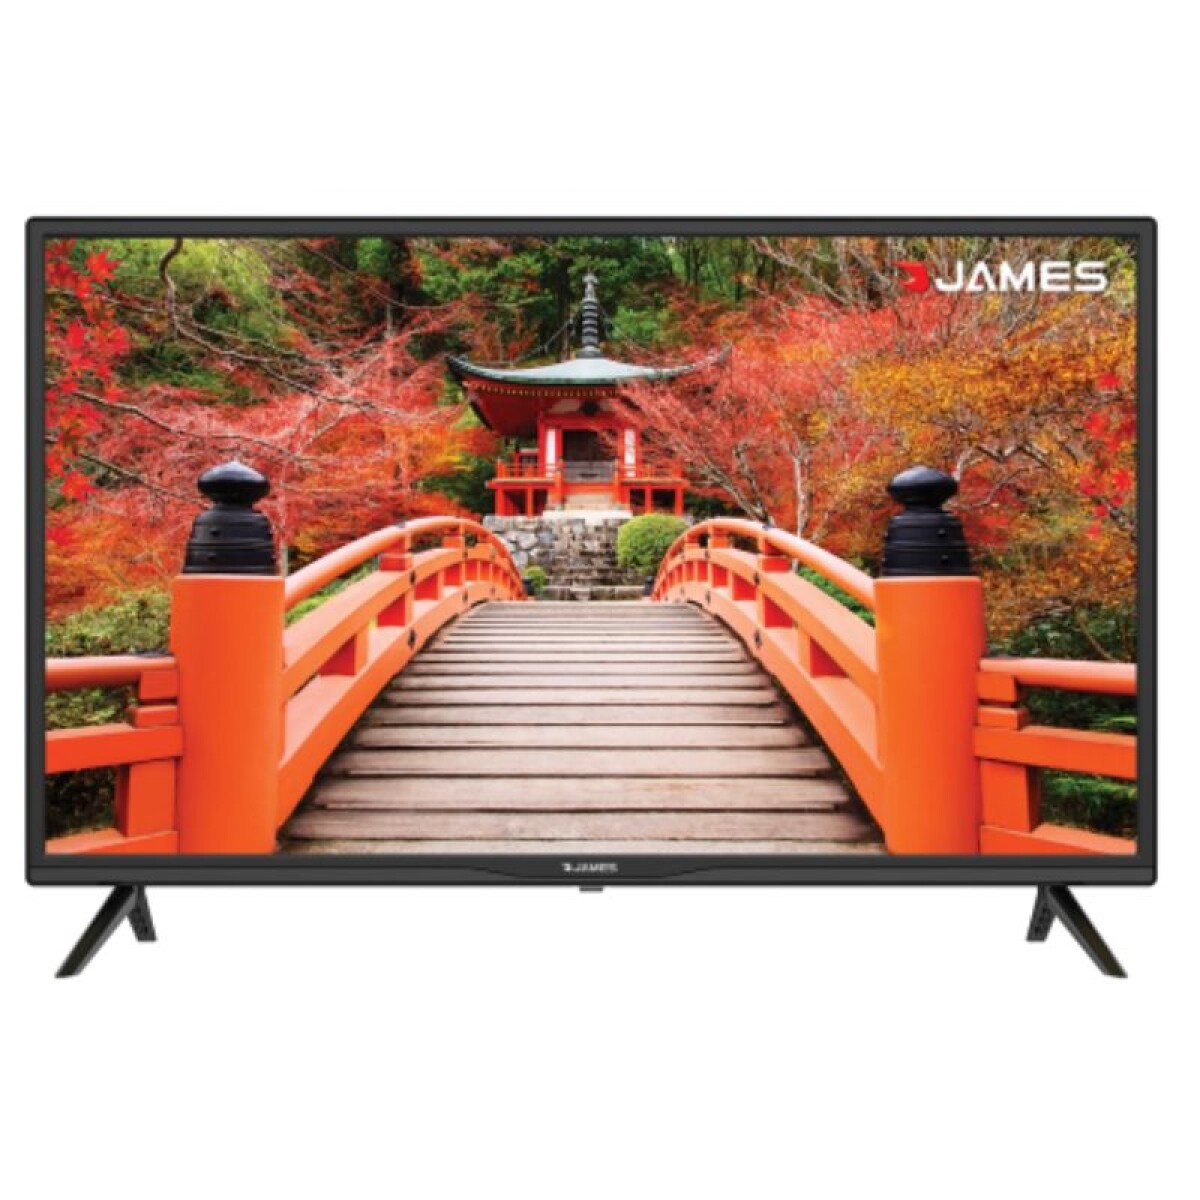 LED 32" SMART TV JAMES - S32 T2EL 